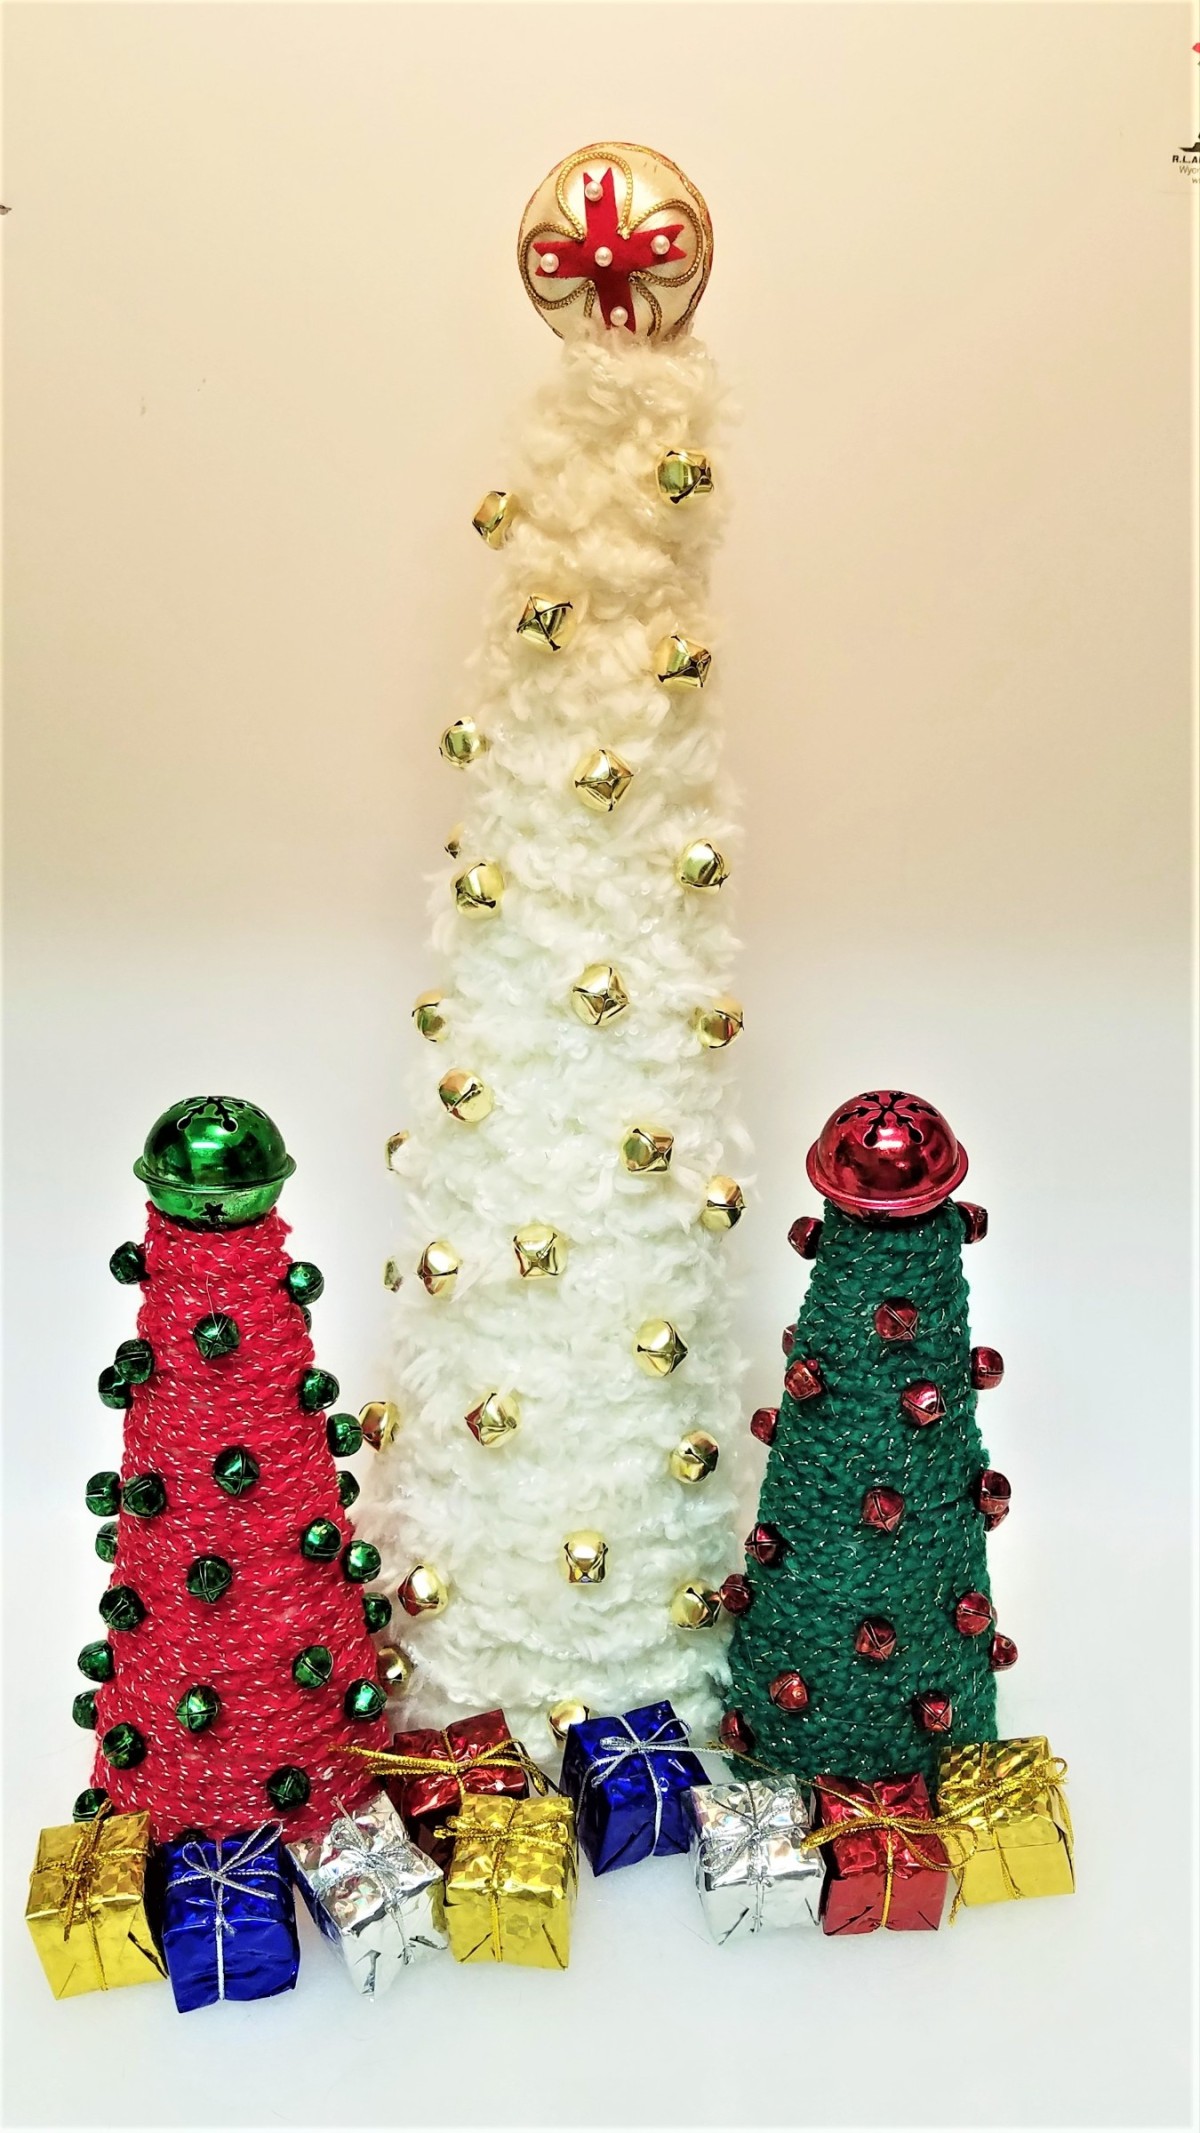 Crochet Chain Wrapped Foam Tree Trio